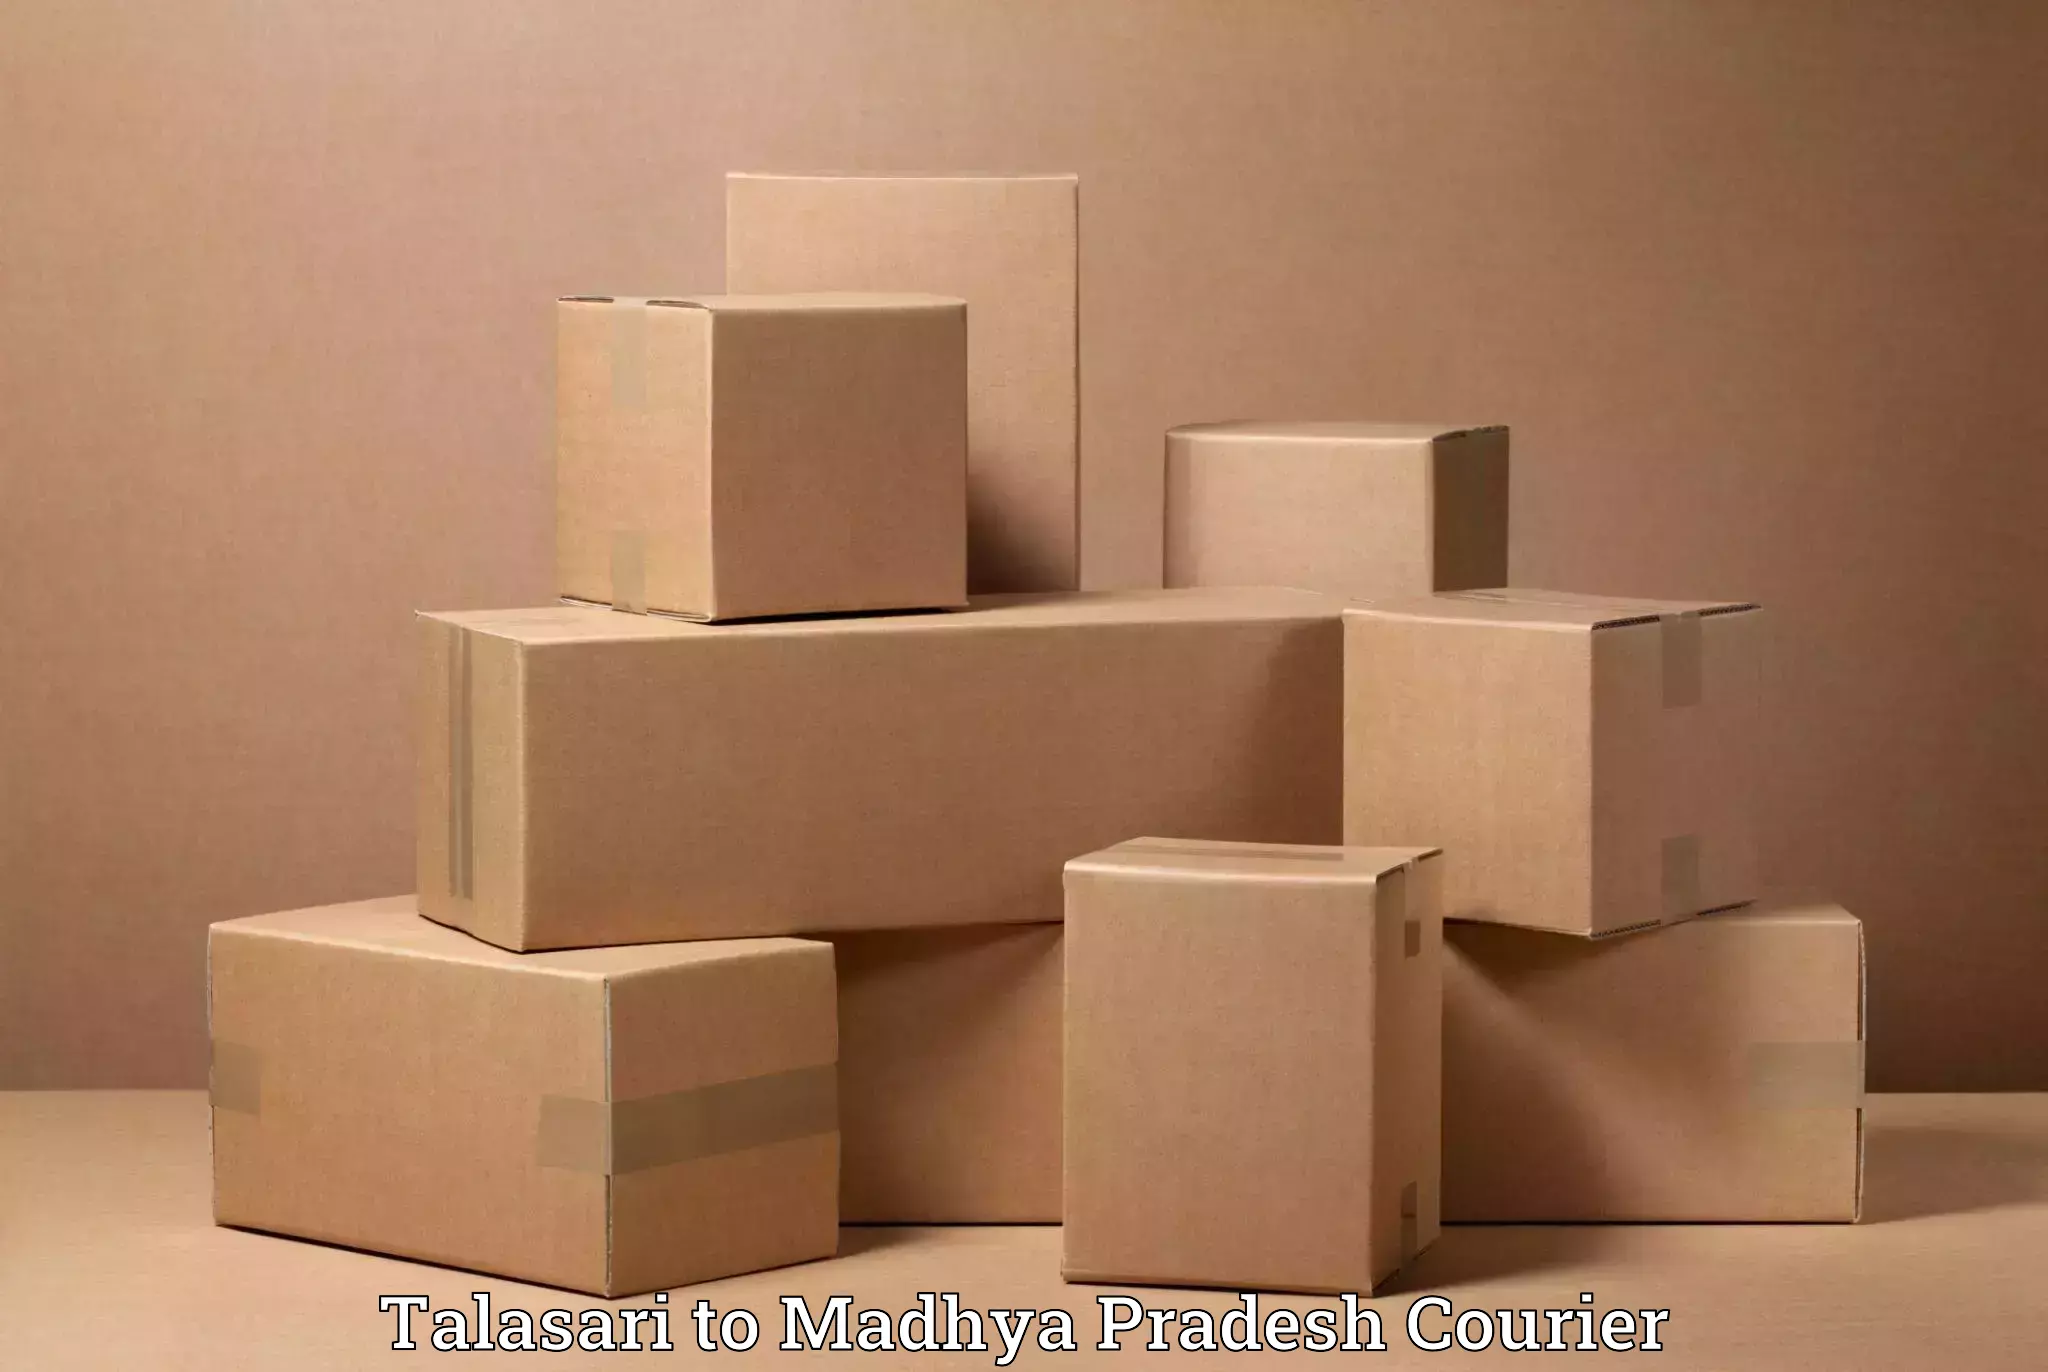 Furniture transport company Talasari to Nainpur